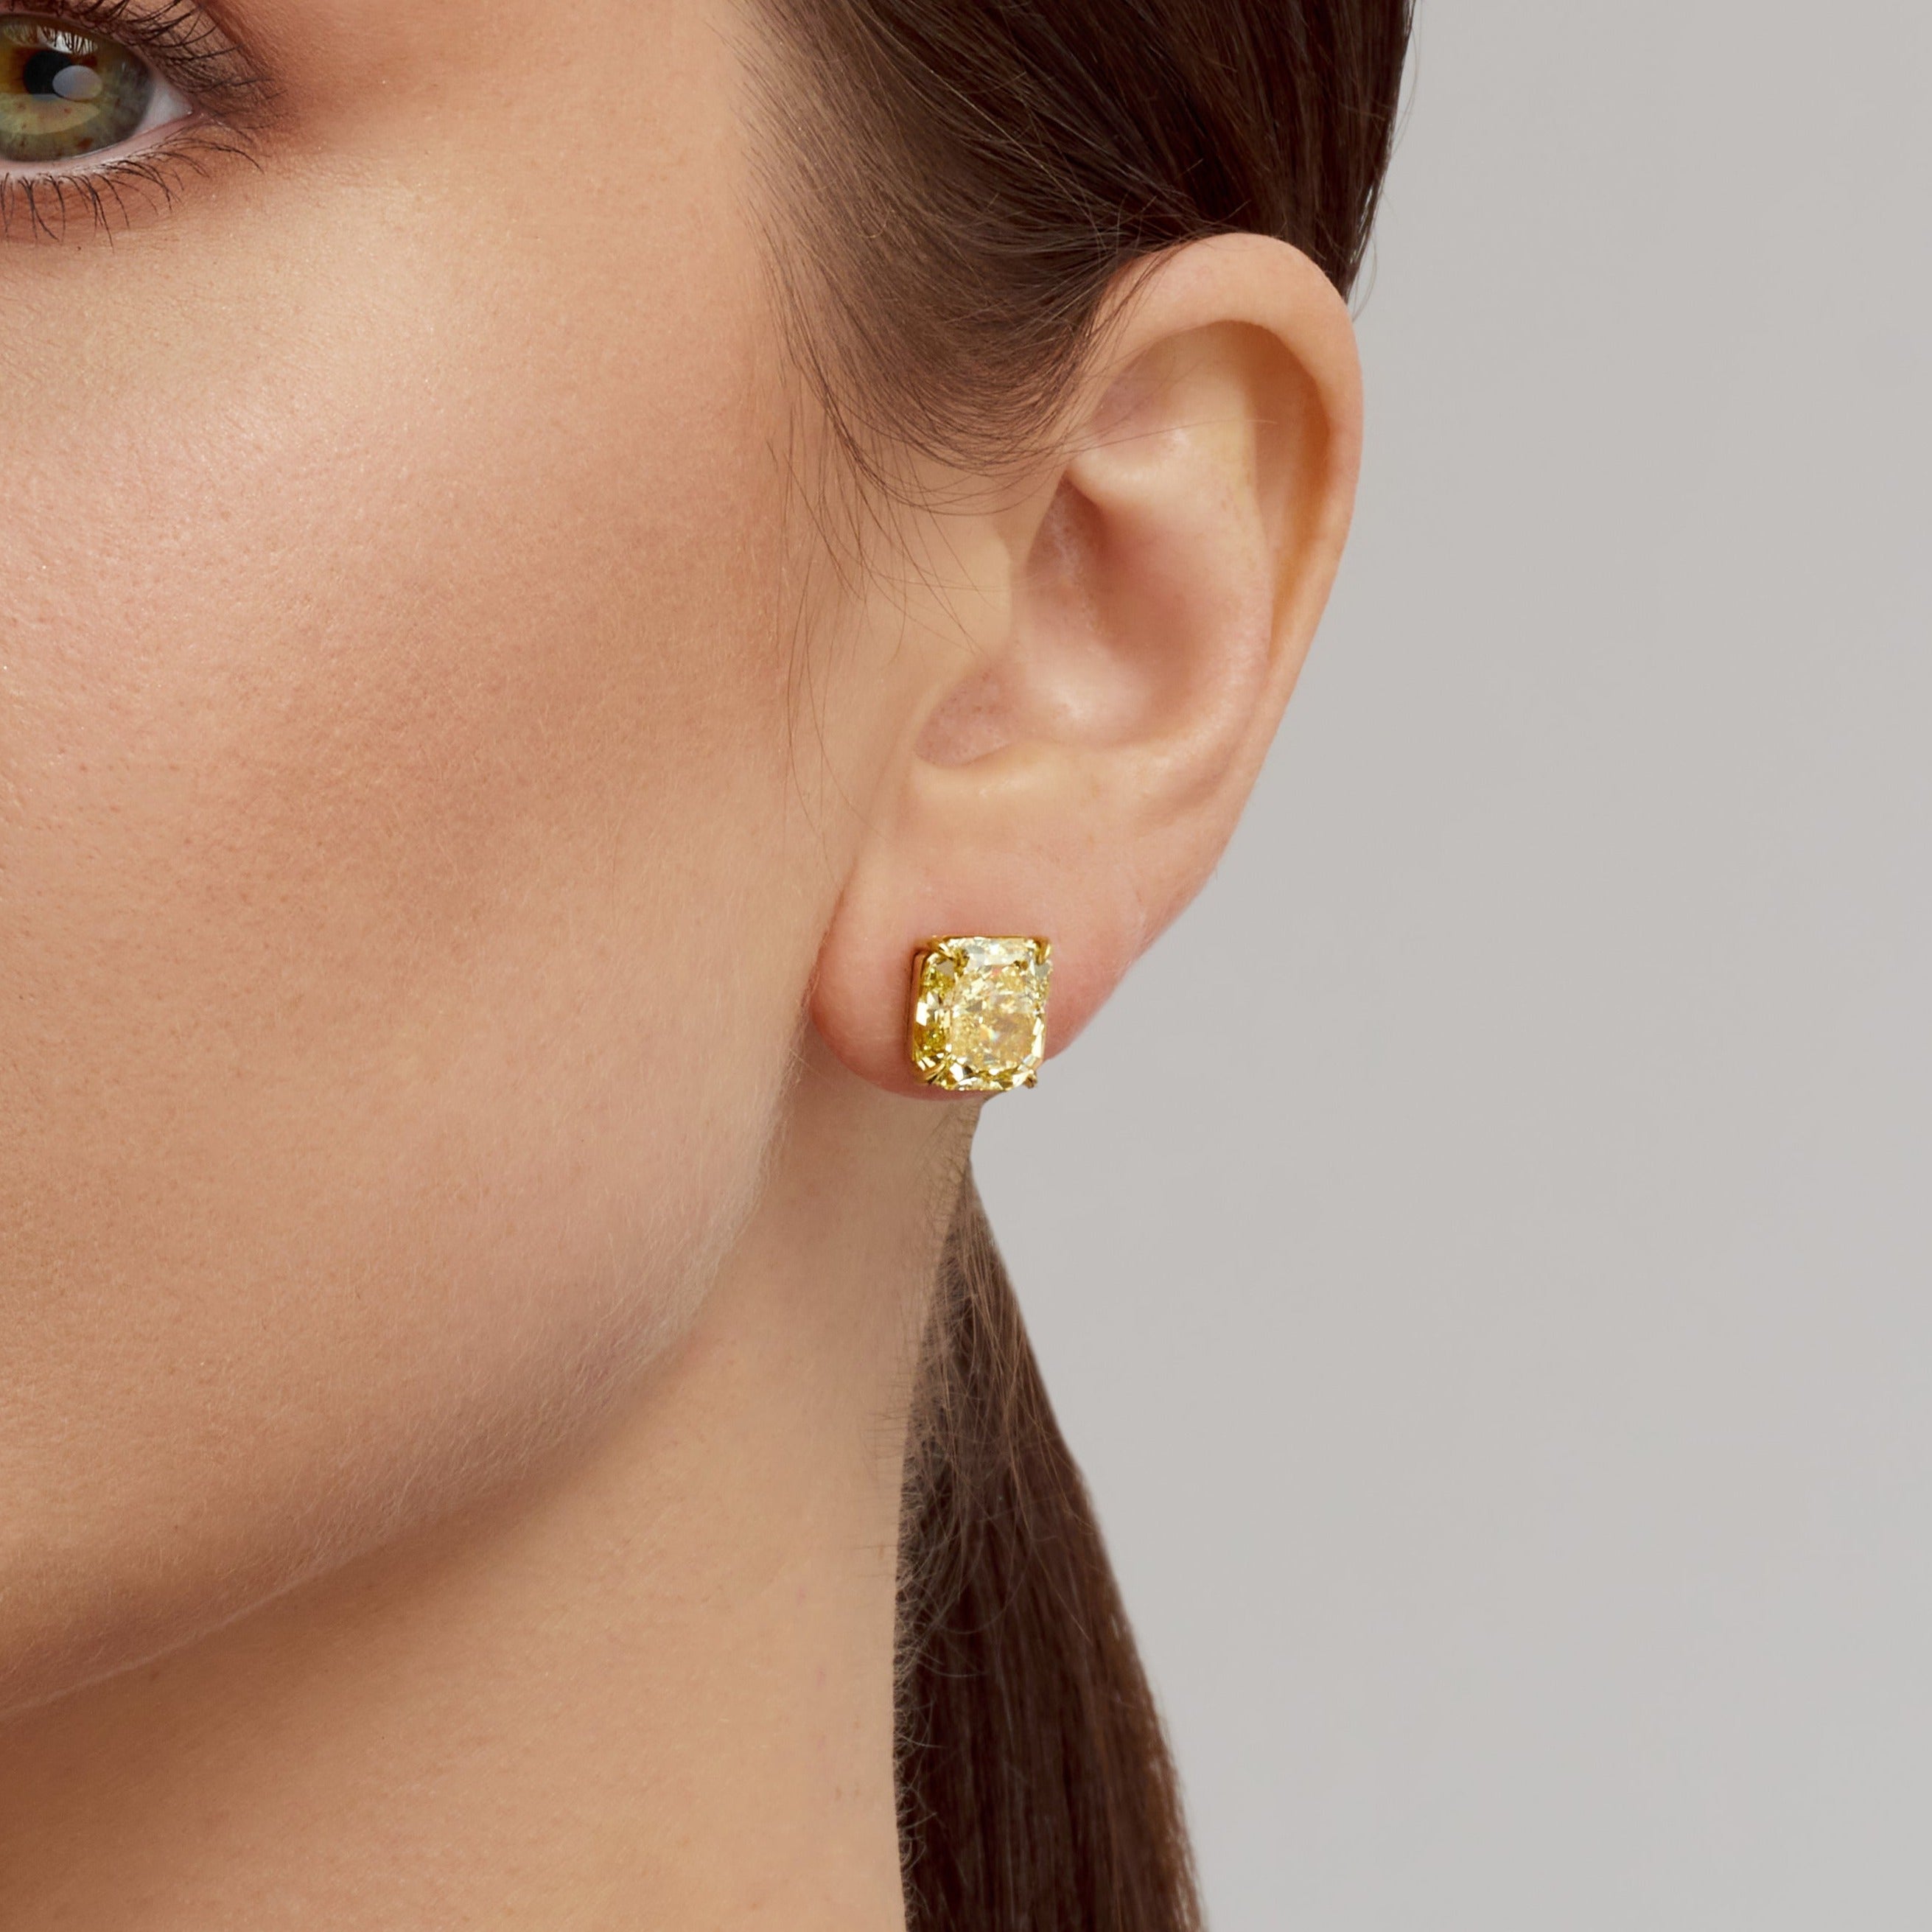 Radiant Cut Fancy Yellow Diamond Stud Earrings in 18 Karat Yellow Gold